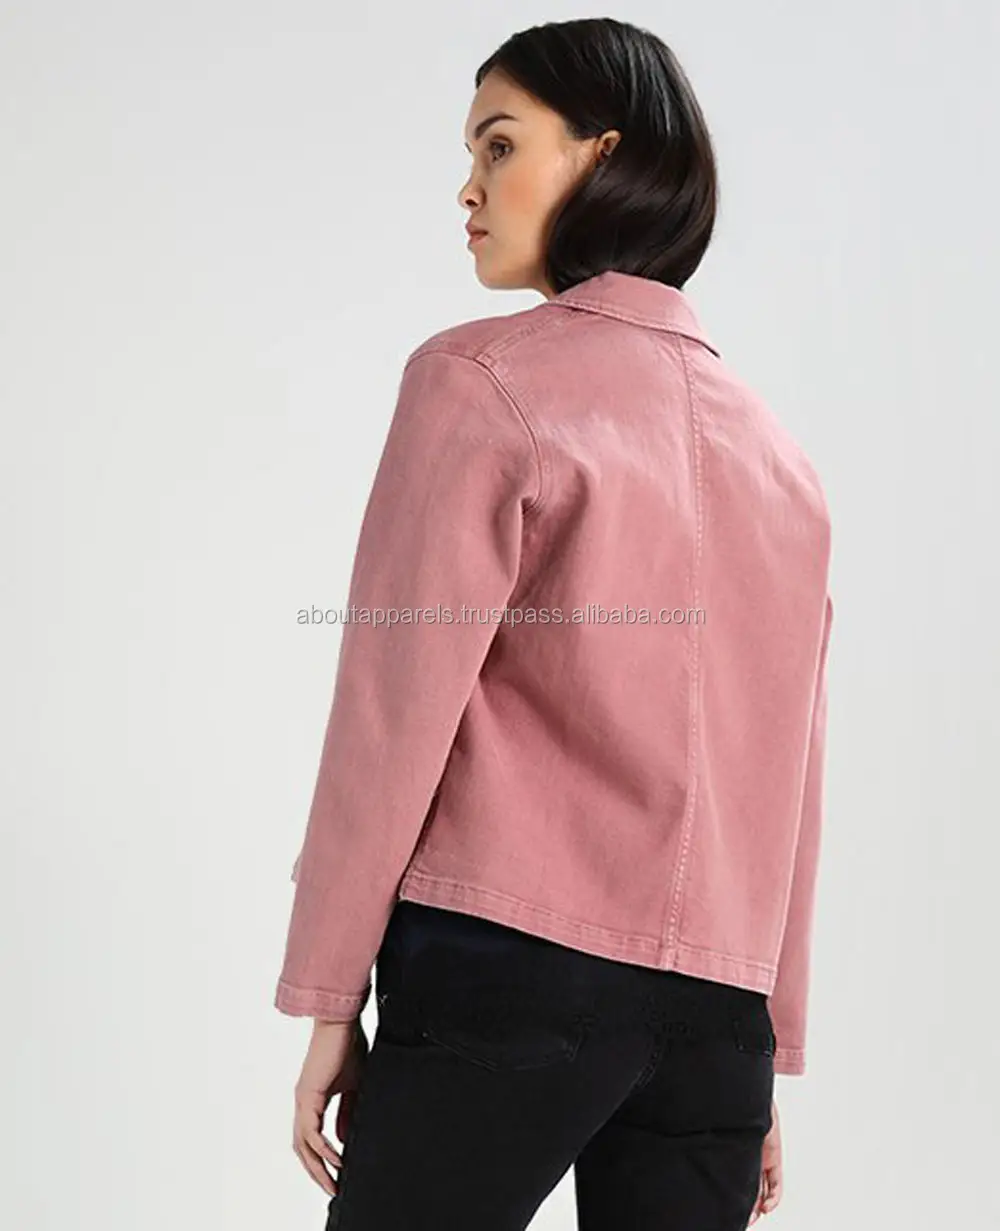 Оптовая продажа, дешевая женская джинсовая куртка с вышивкой, женская джинсовая куртка в интернет-магазине